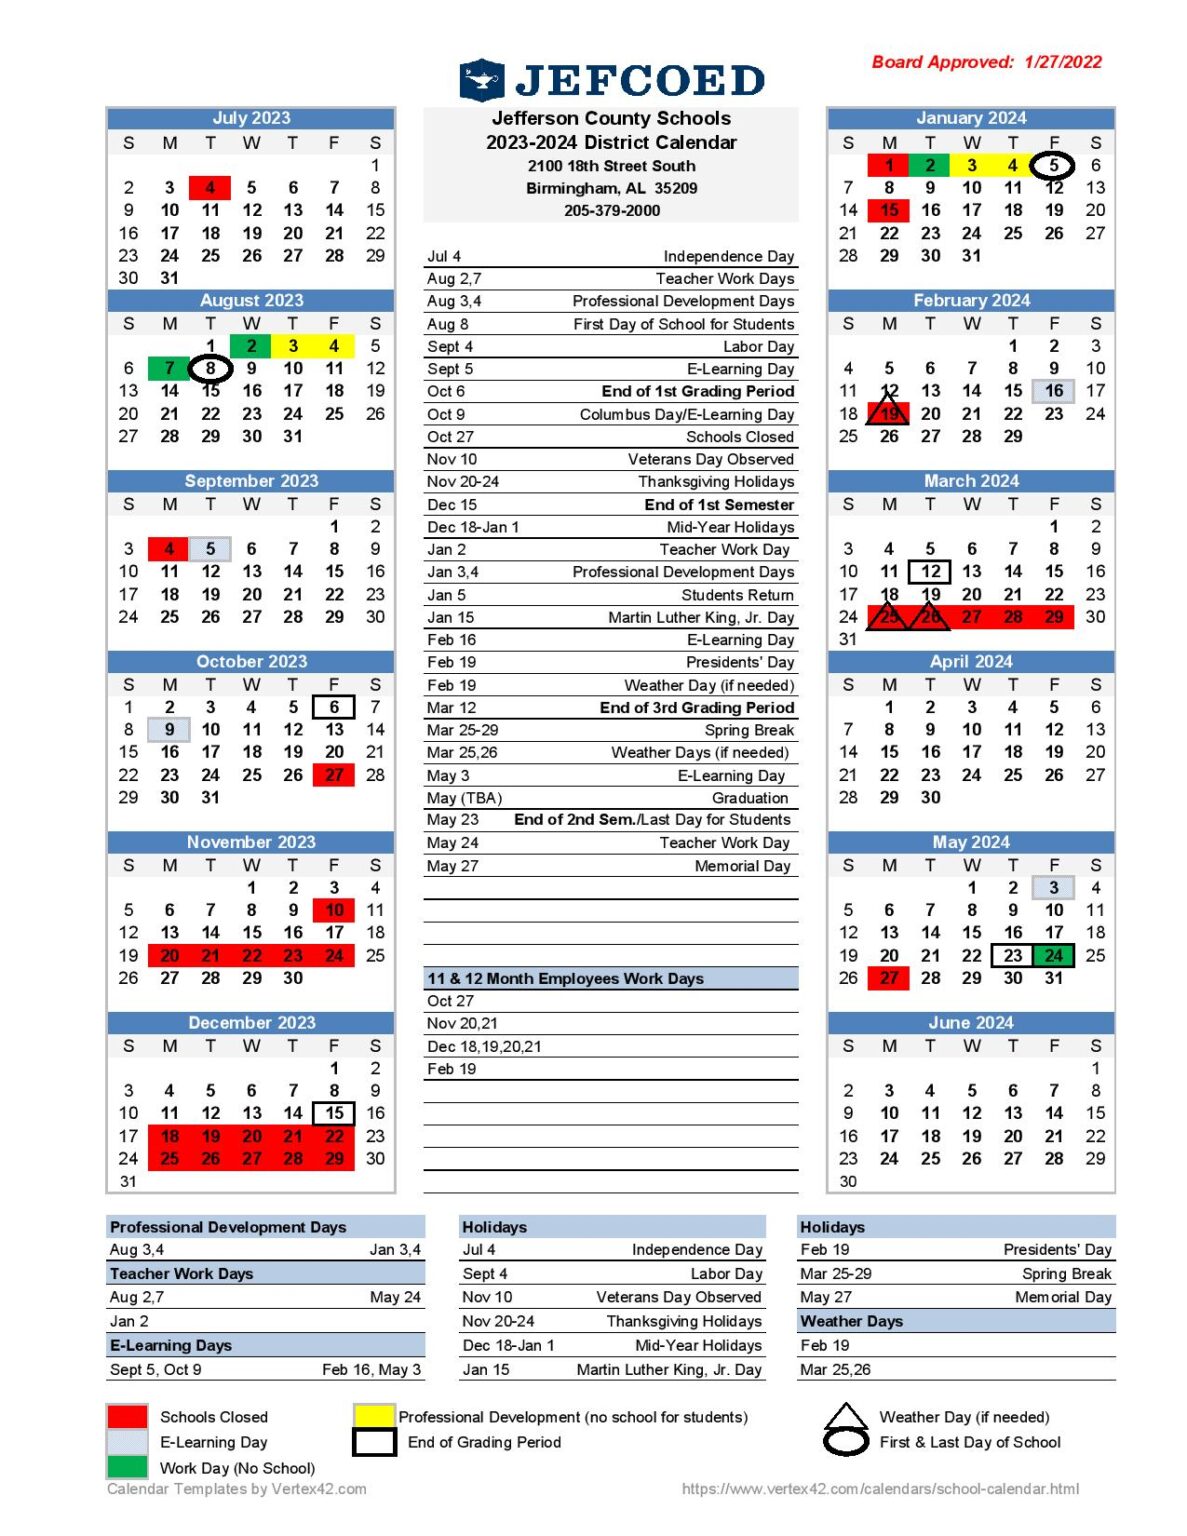 Jcps School Calendar 23 24 Phebe Marrilee